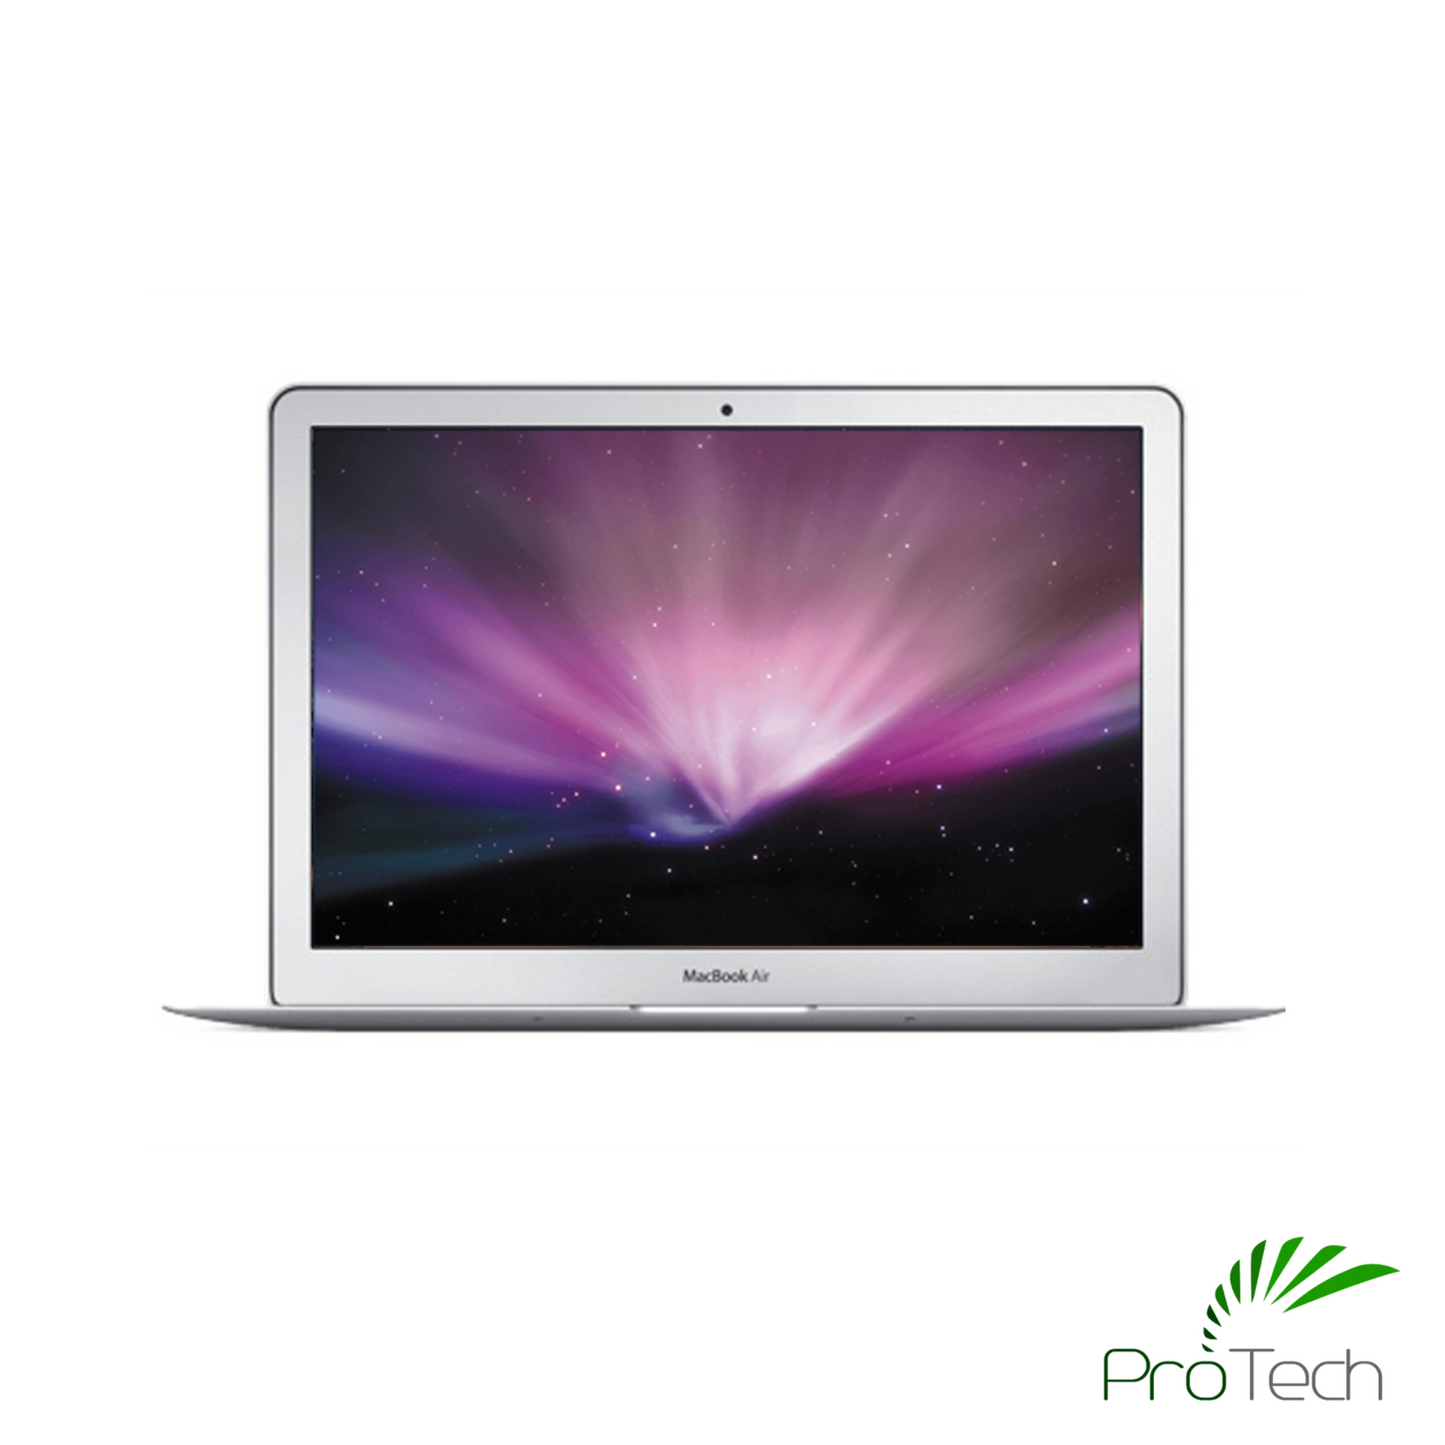 Apple MacBook Air 13” (Mid 2011)